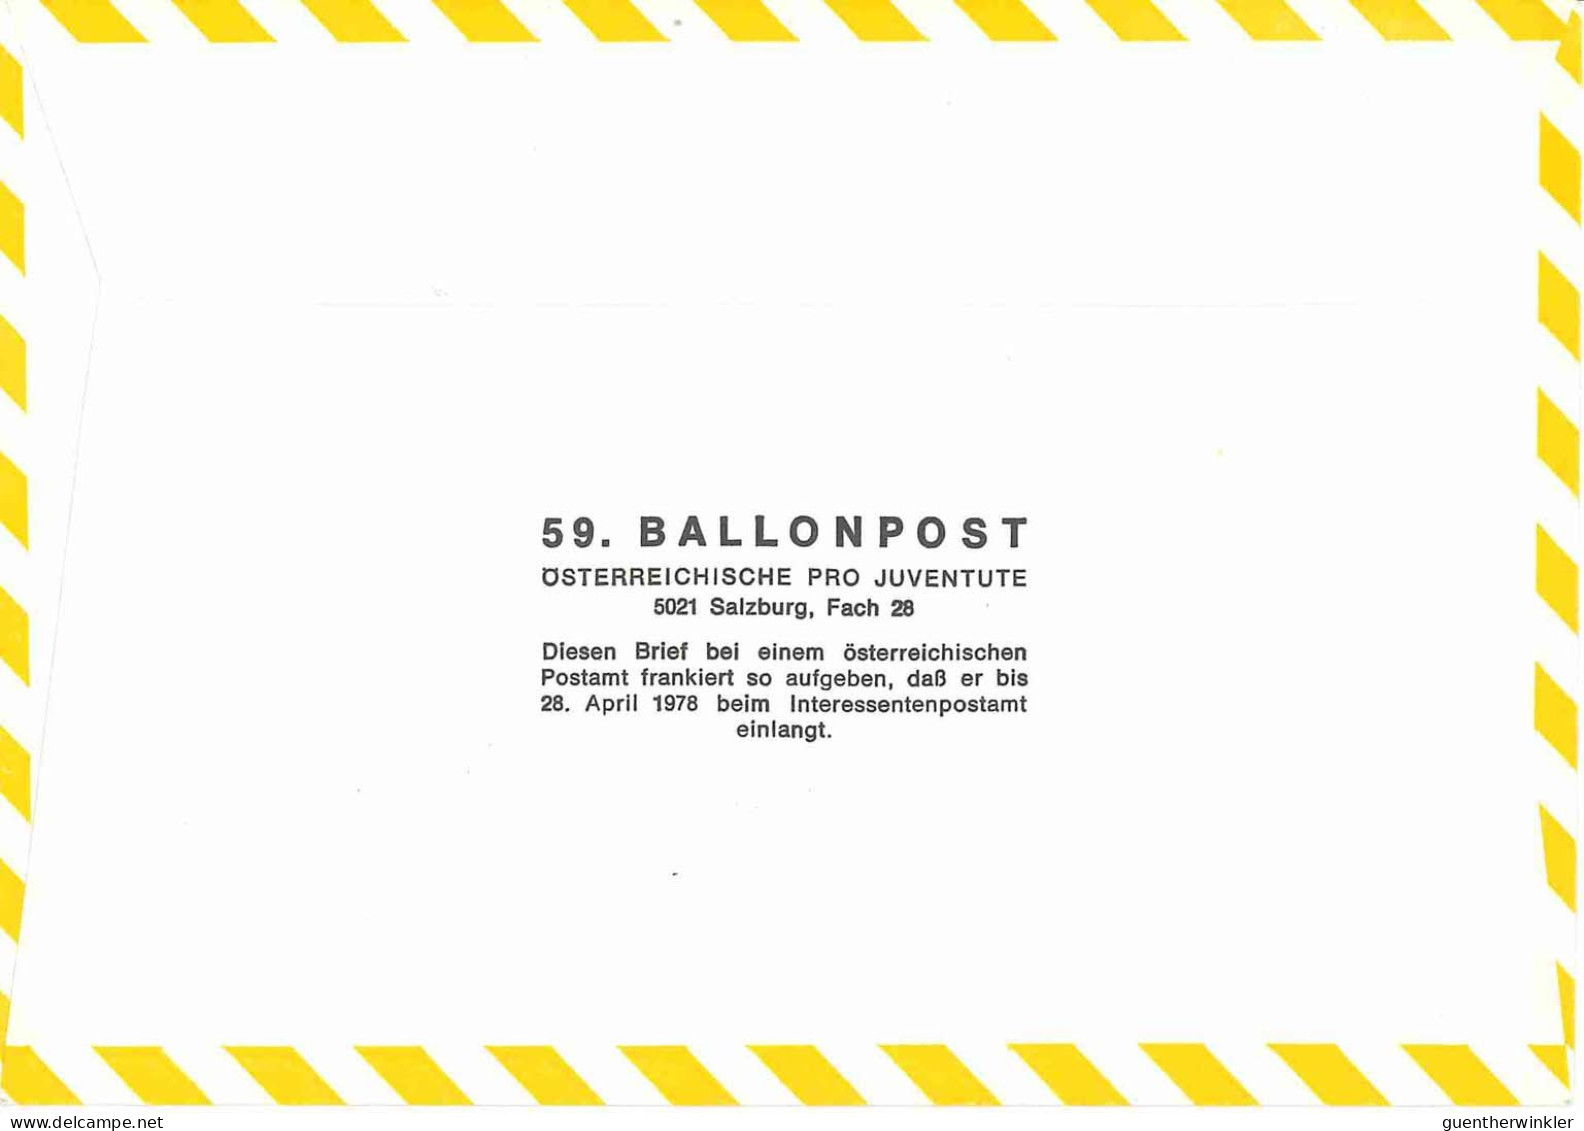 Regulärer Ballonpostflug Nr. 59a Der Pro Juventute [RBP59a] - Balloon Covers